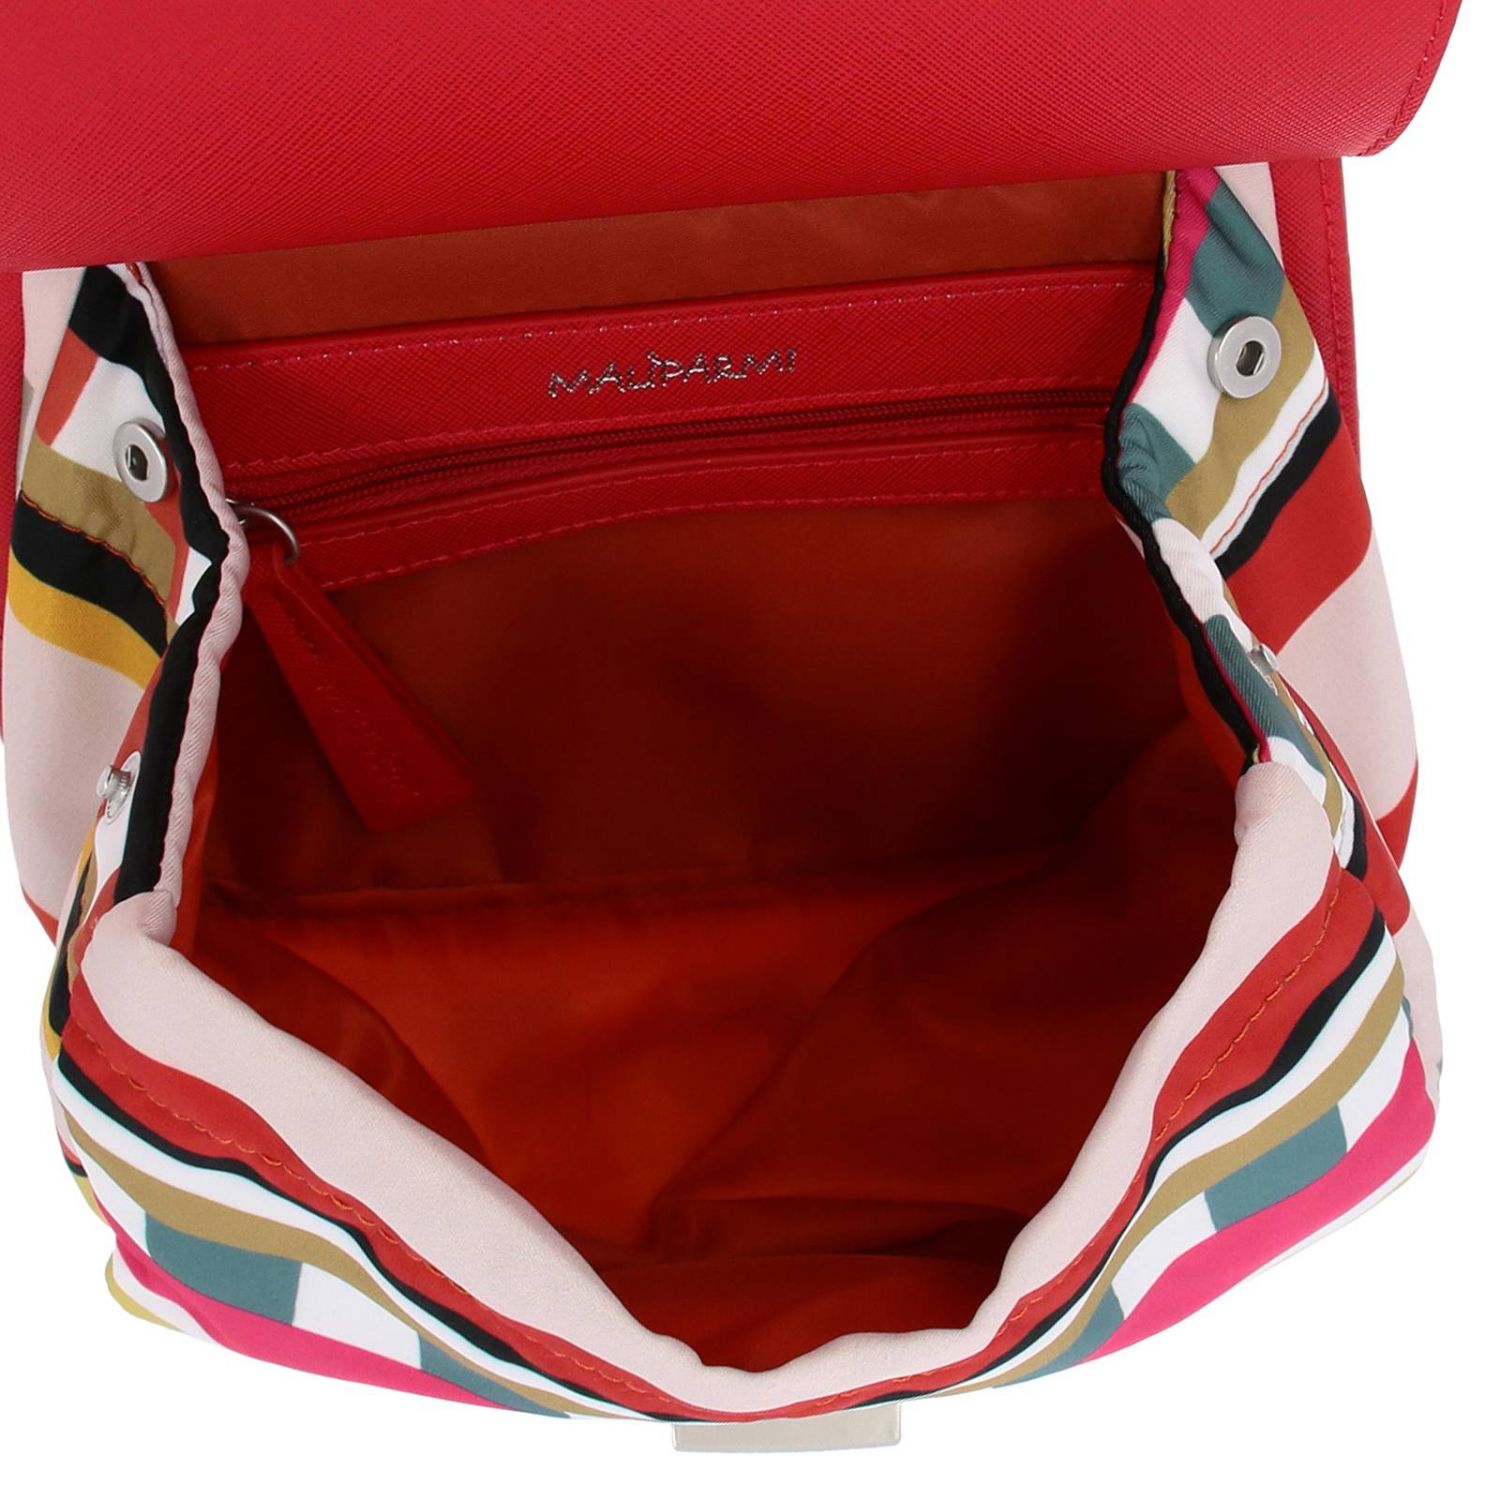 Maliparmi Outlet: Shoulder bag women - Red | Mini Bag Maliparmi BN0084 ...